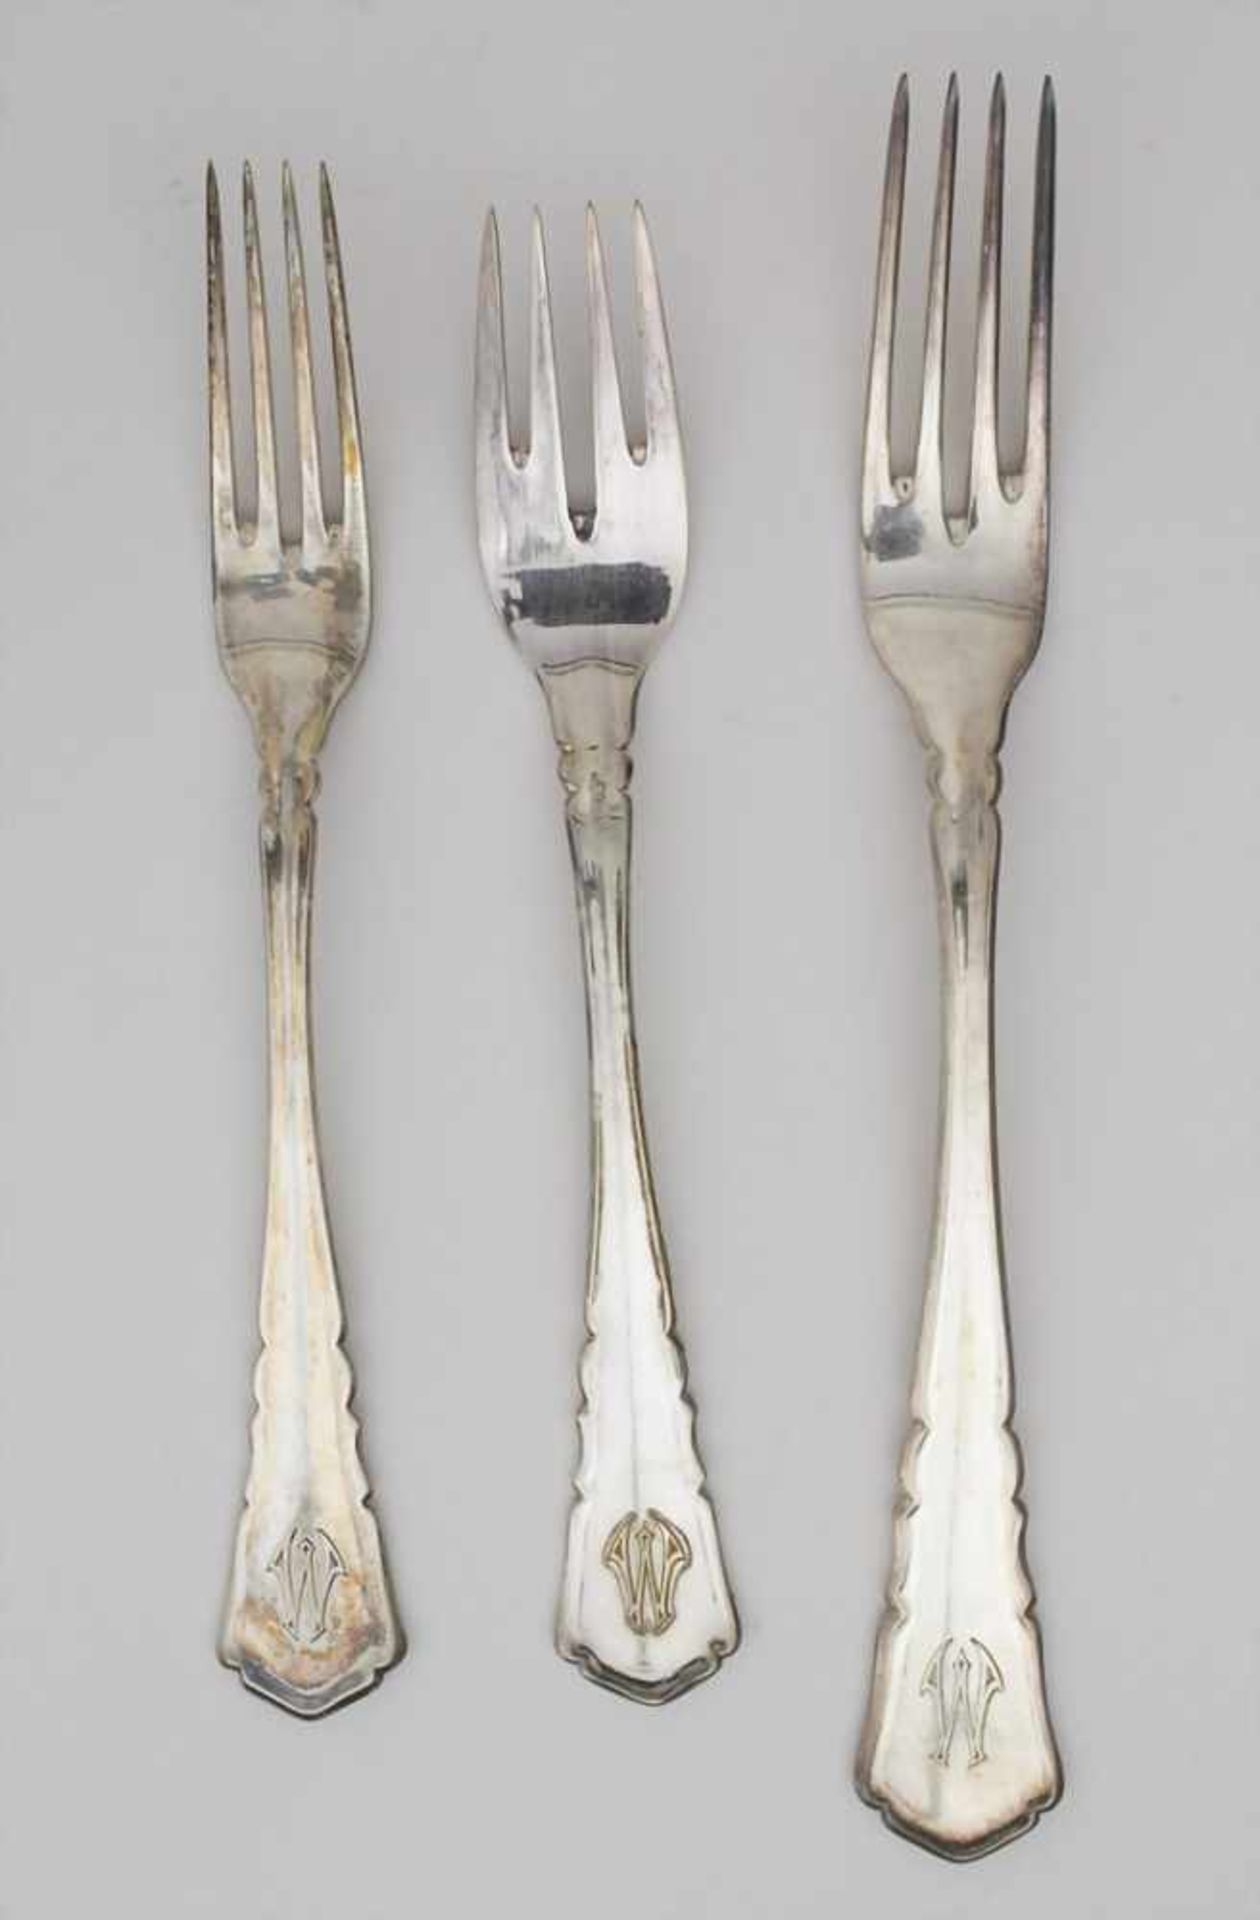 Silberbesteck für 12 Personen mit 2 Silberplatten / A silver cutlery for 12 people with 2 silver - Bild 2 aus 14